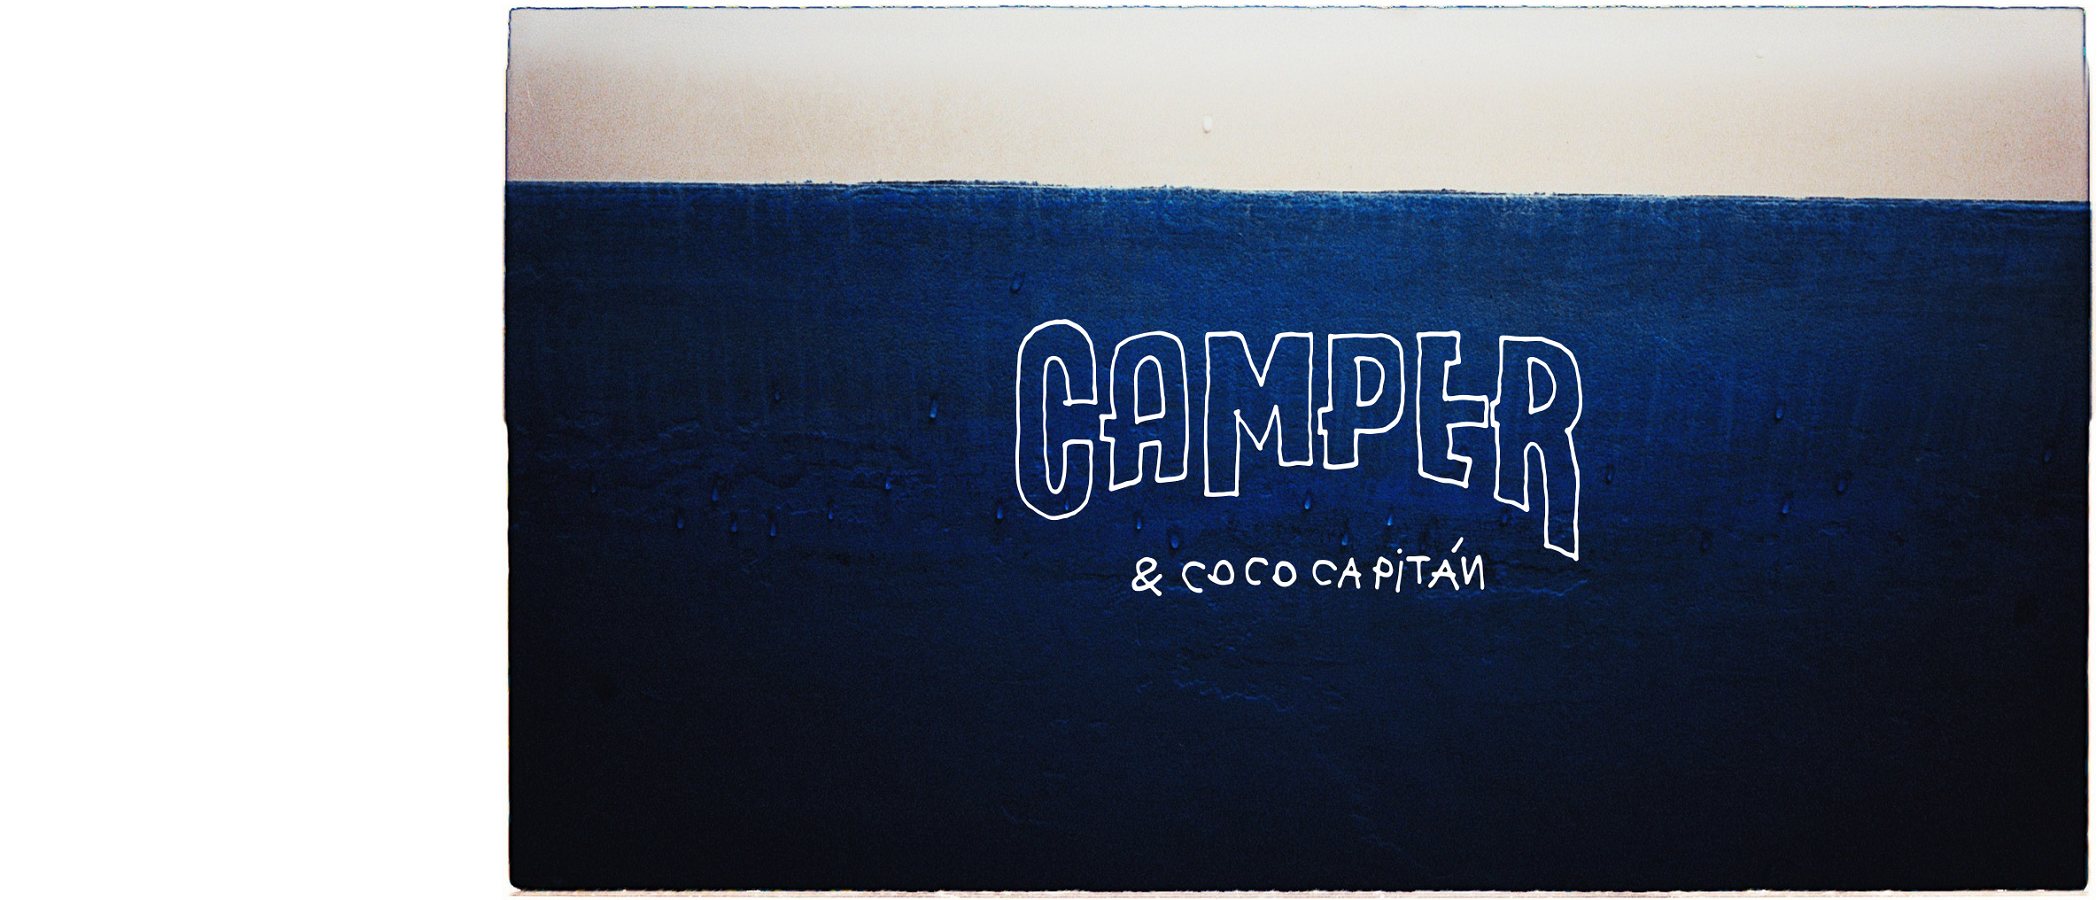 La marca Camper ficha a Coco Capitán para una colección cápsula muy mediterránea y eco